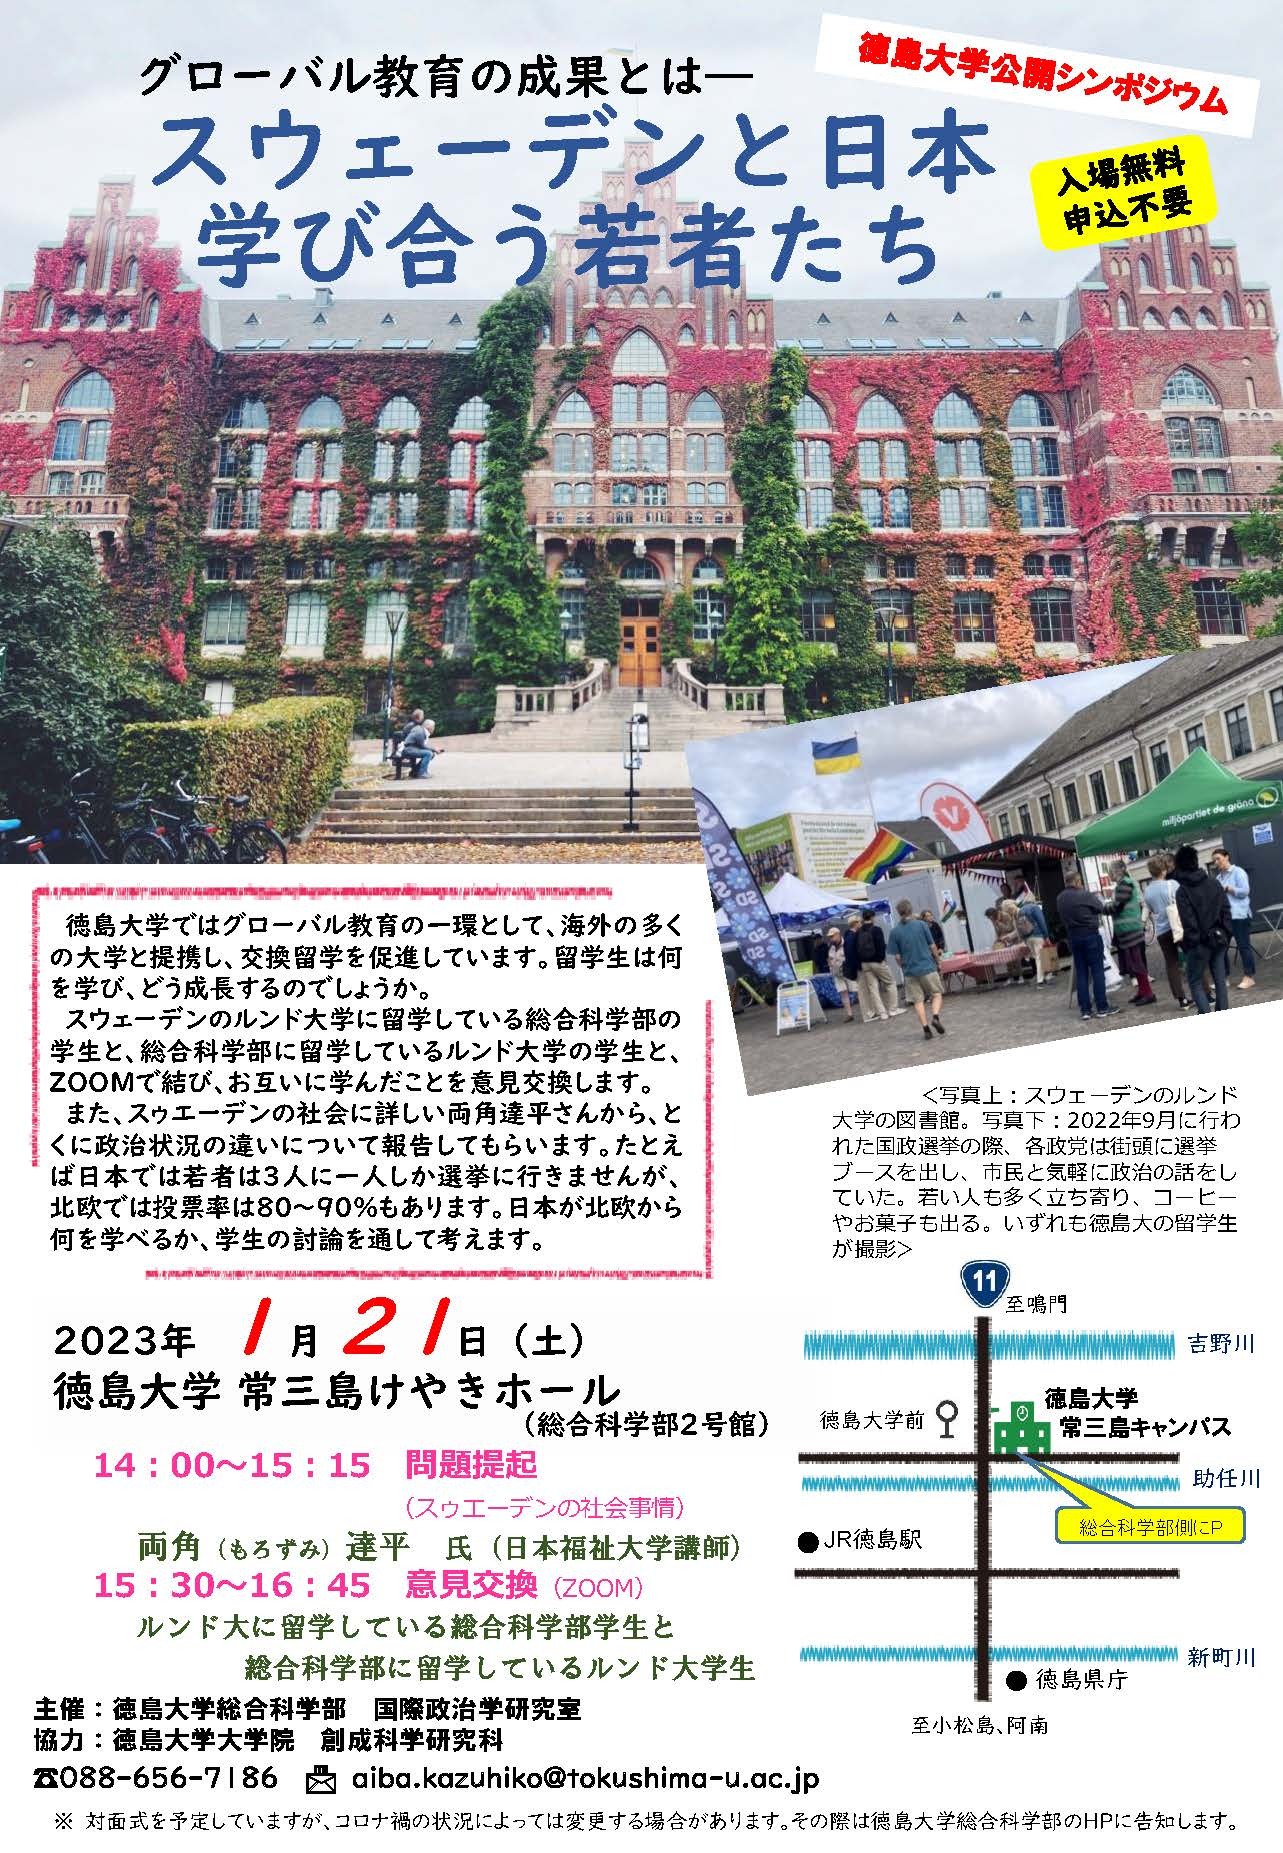 徳島大学公開シンポジウム